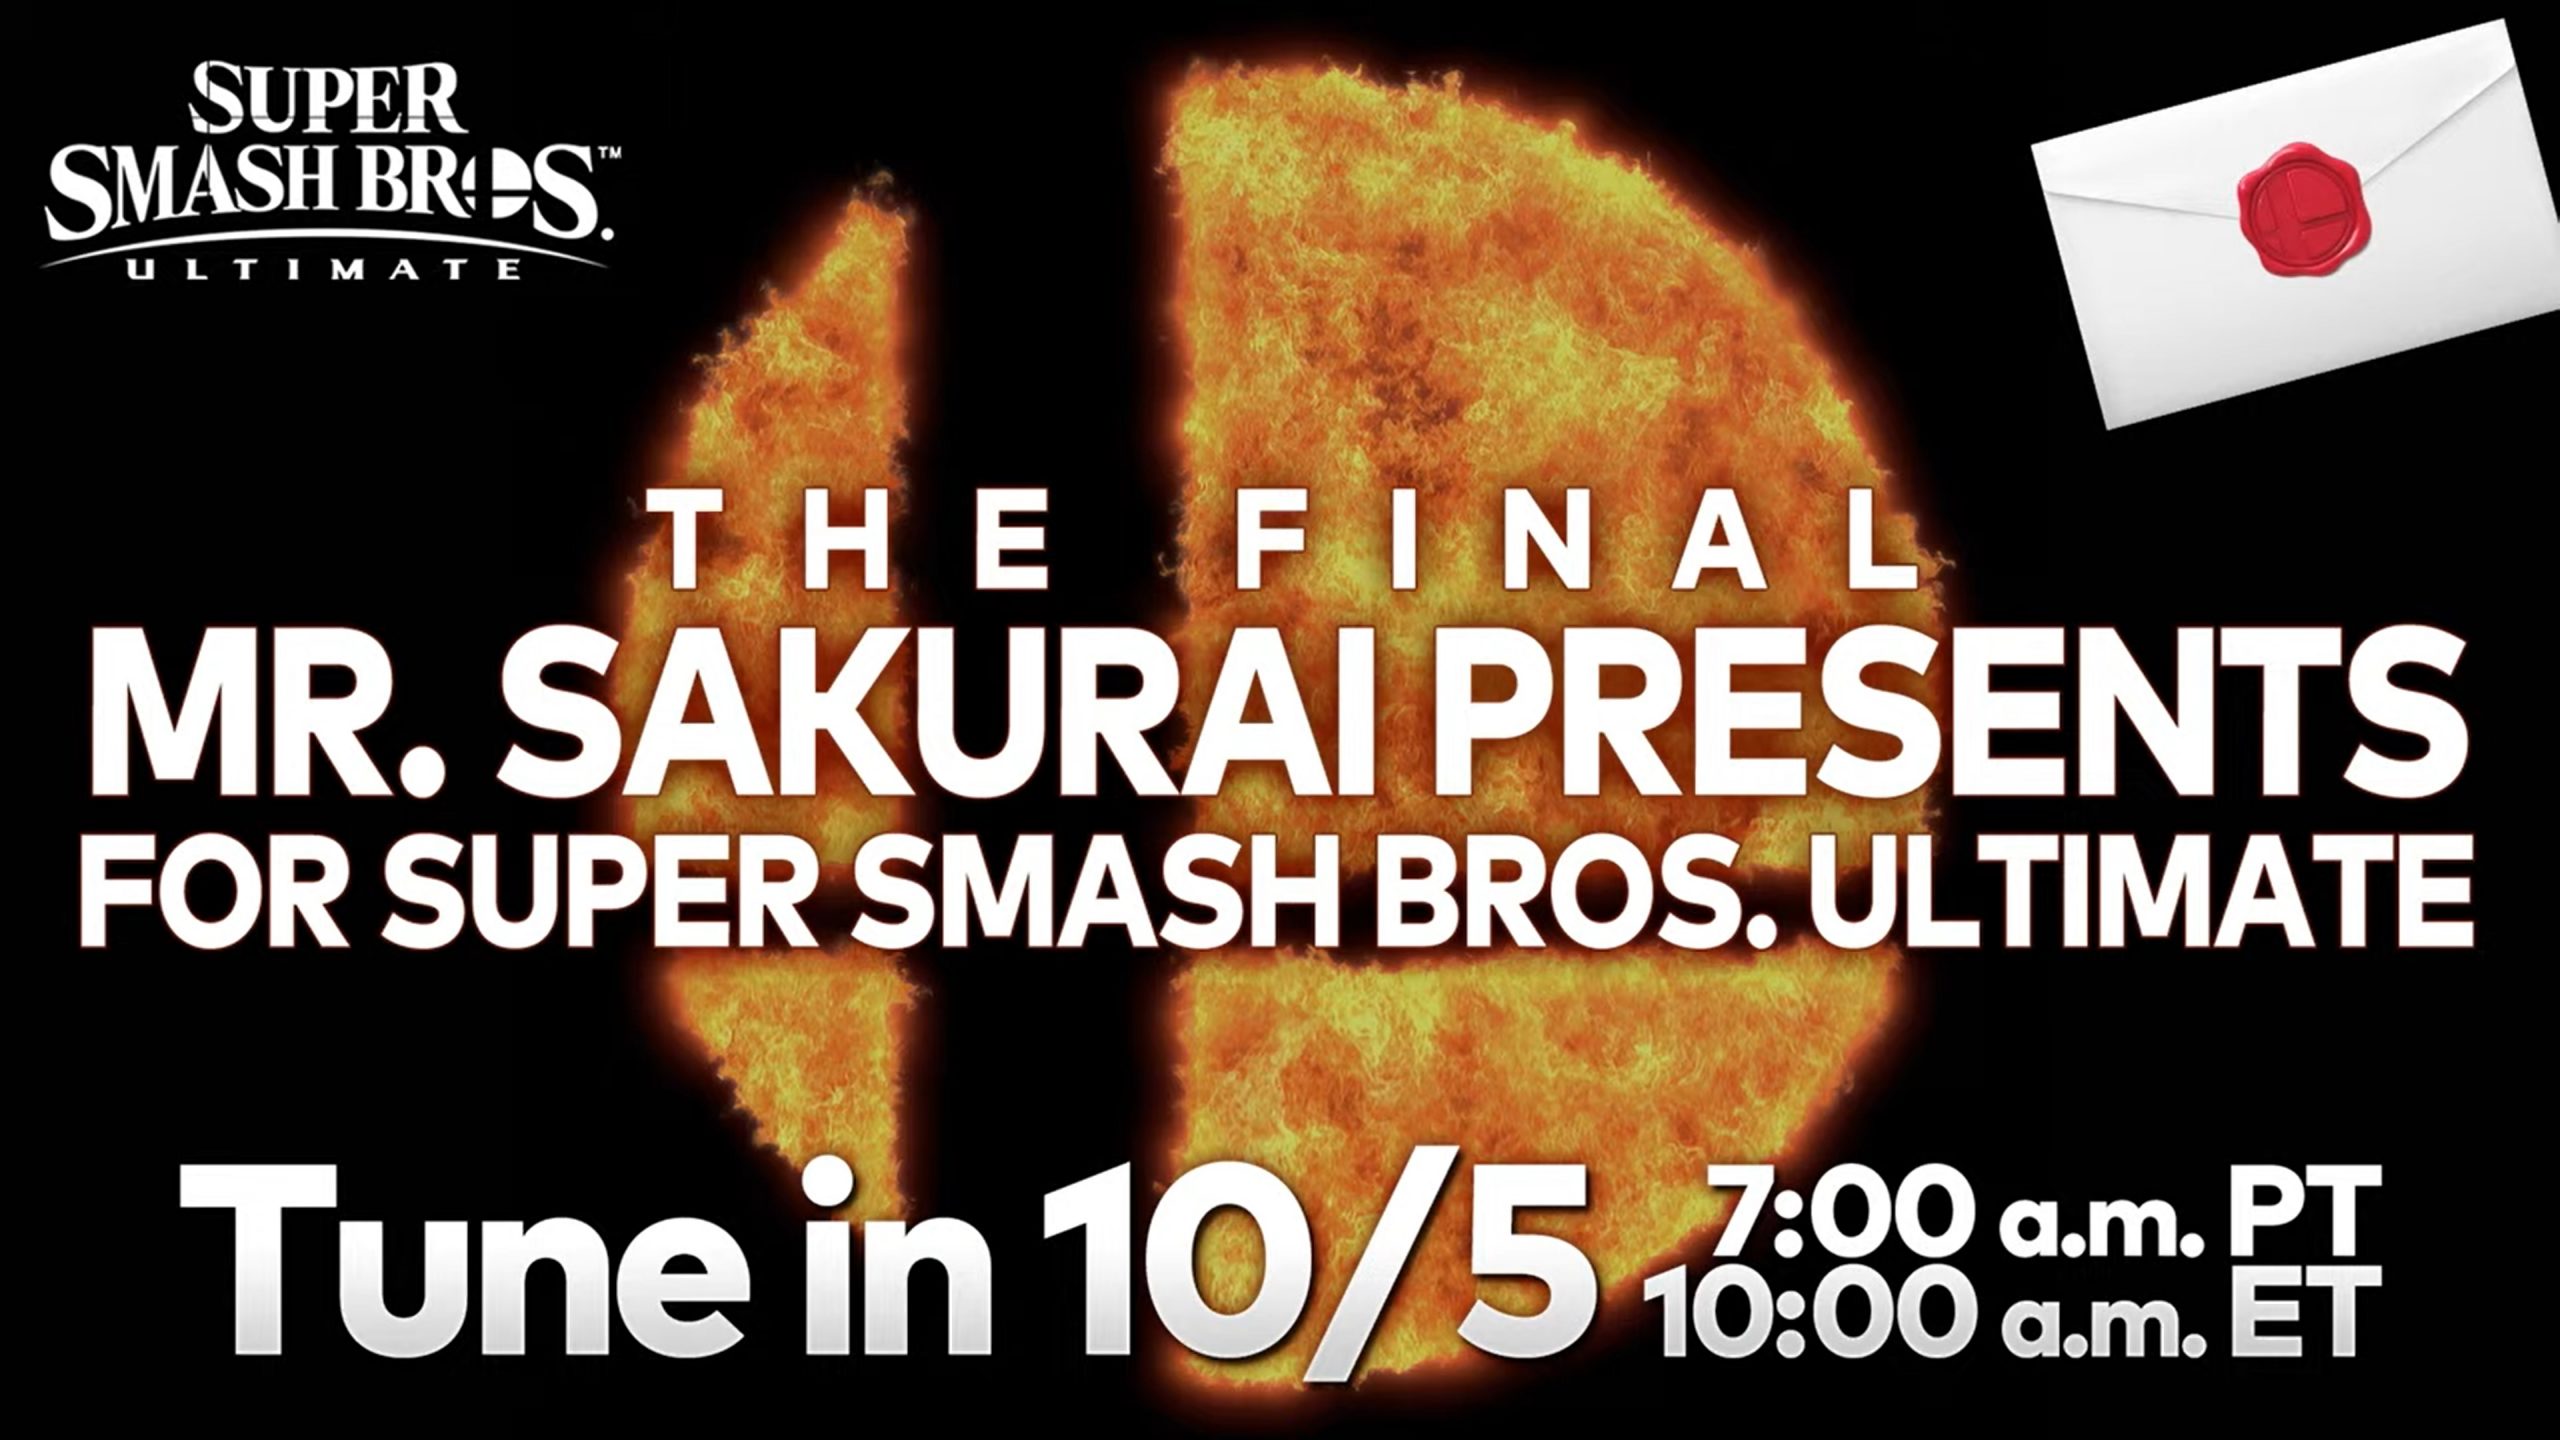 Super Smash Bros. Ultimate The Final "Mr. Sakurai Presents" live stream